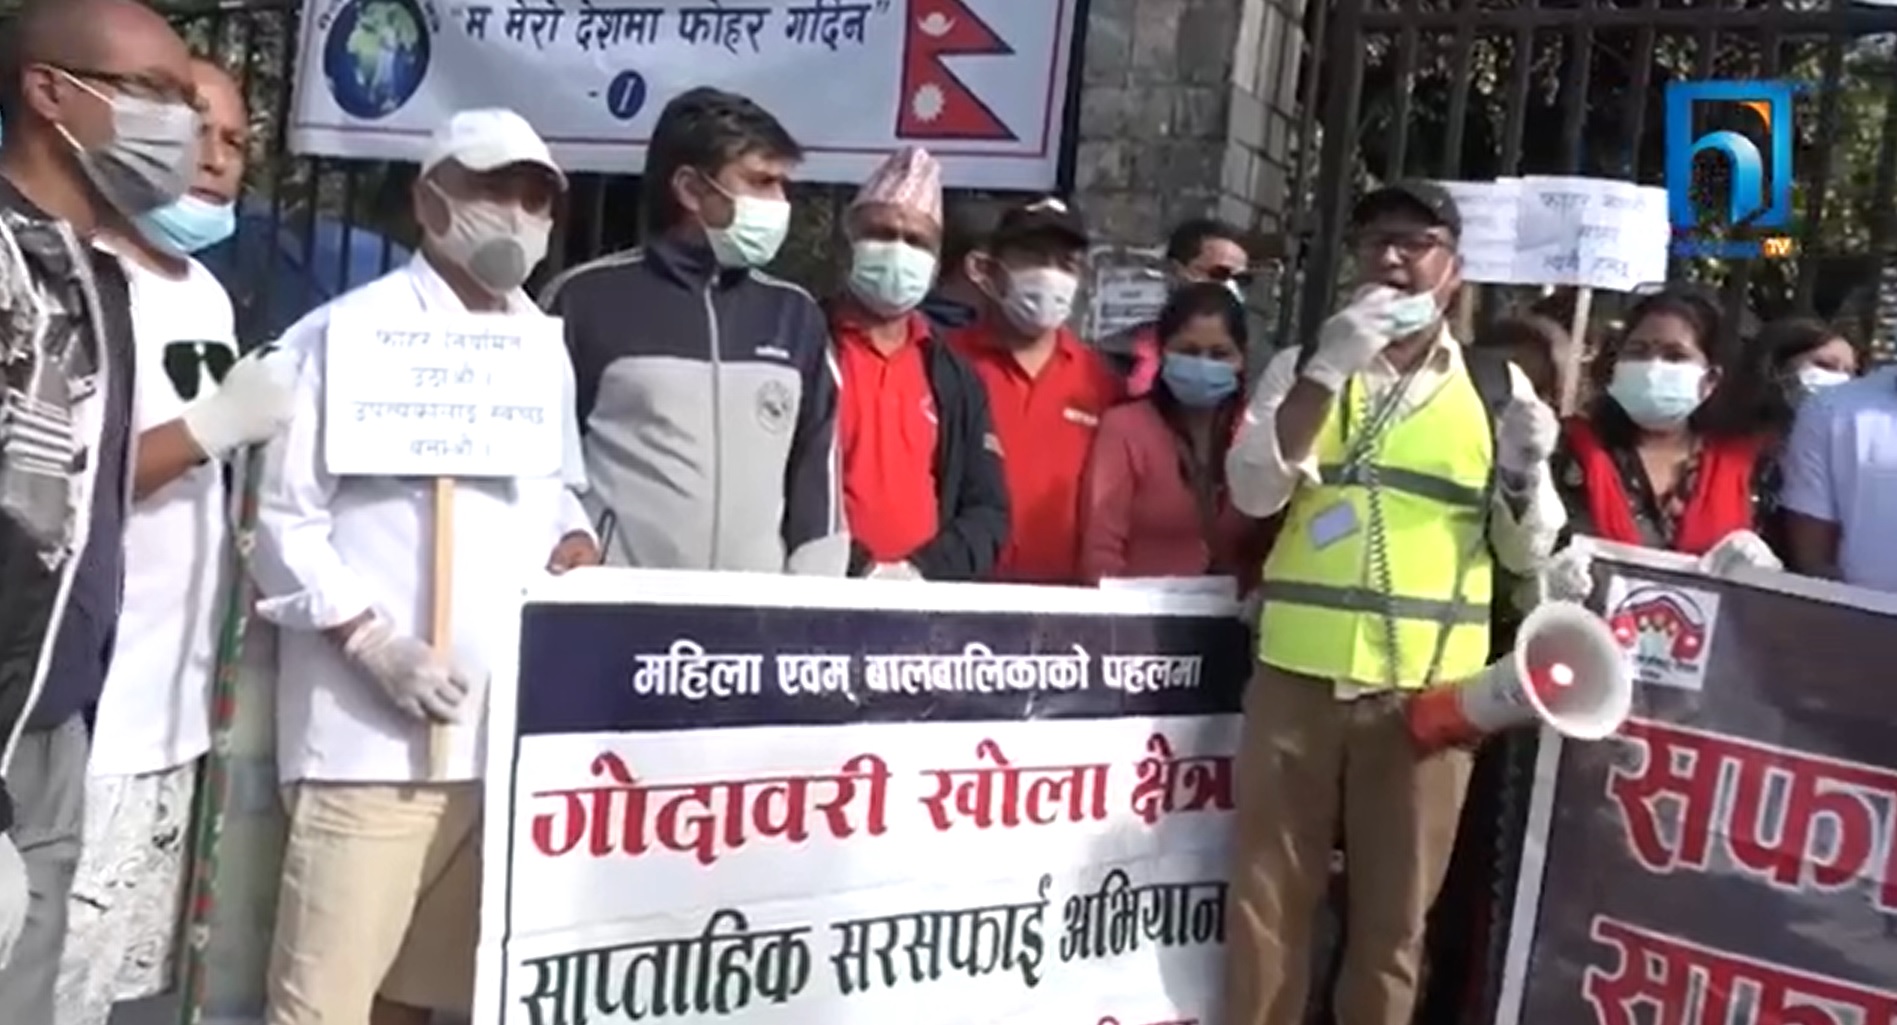 काठमाडौंको फोहोर उठाउन नागरिक अभियन्ताहरु सक्रिय (भिडियो रिपोर्टसहित)